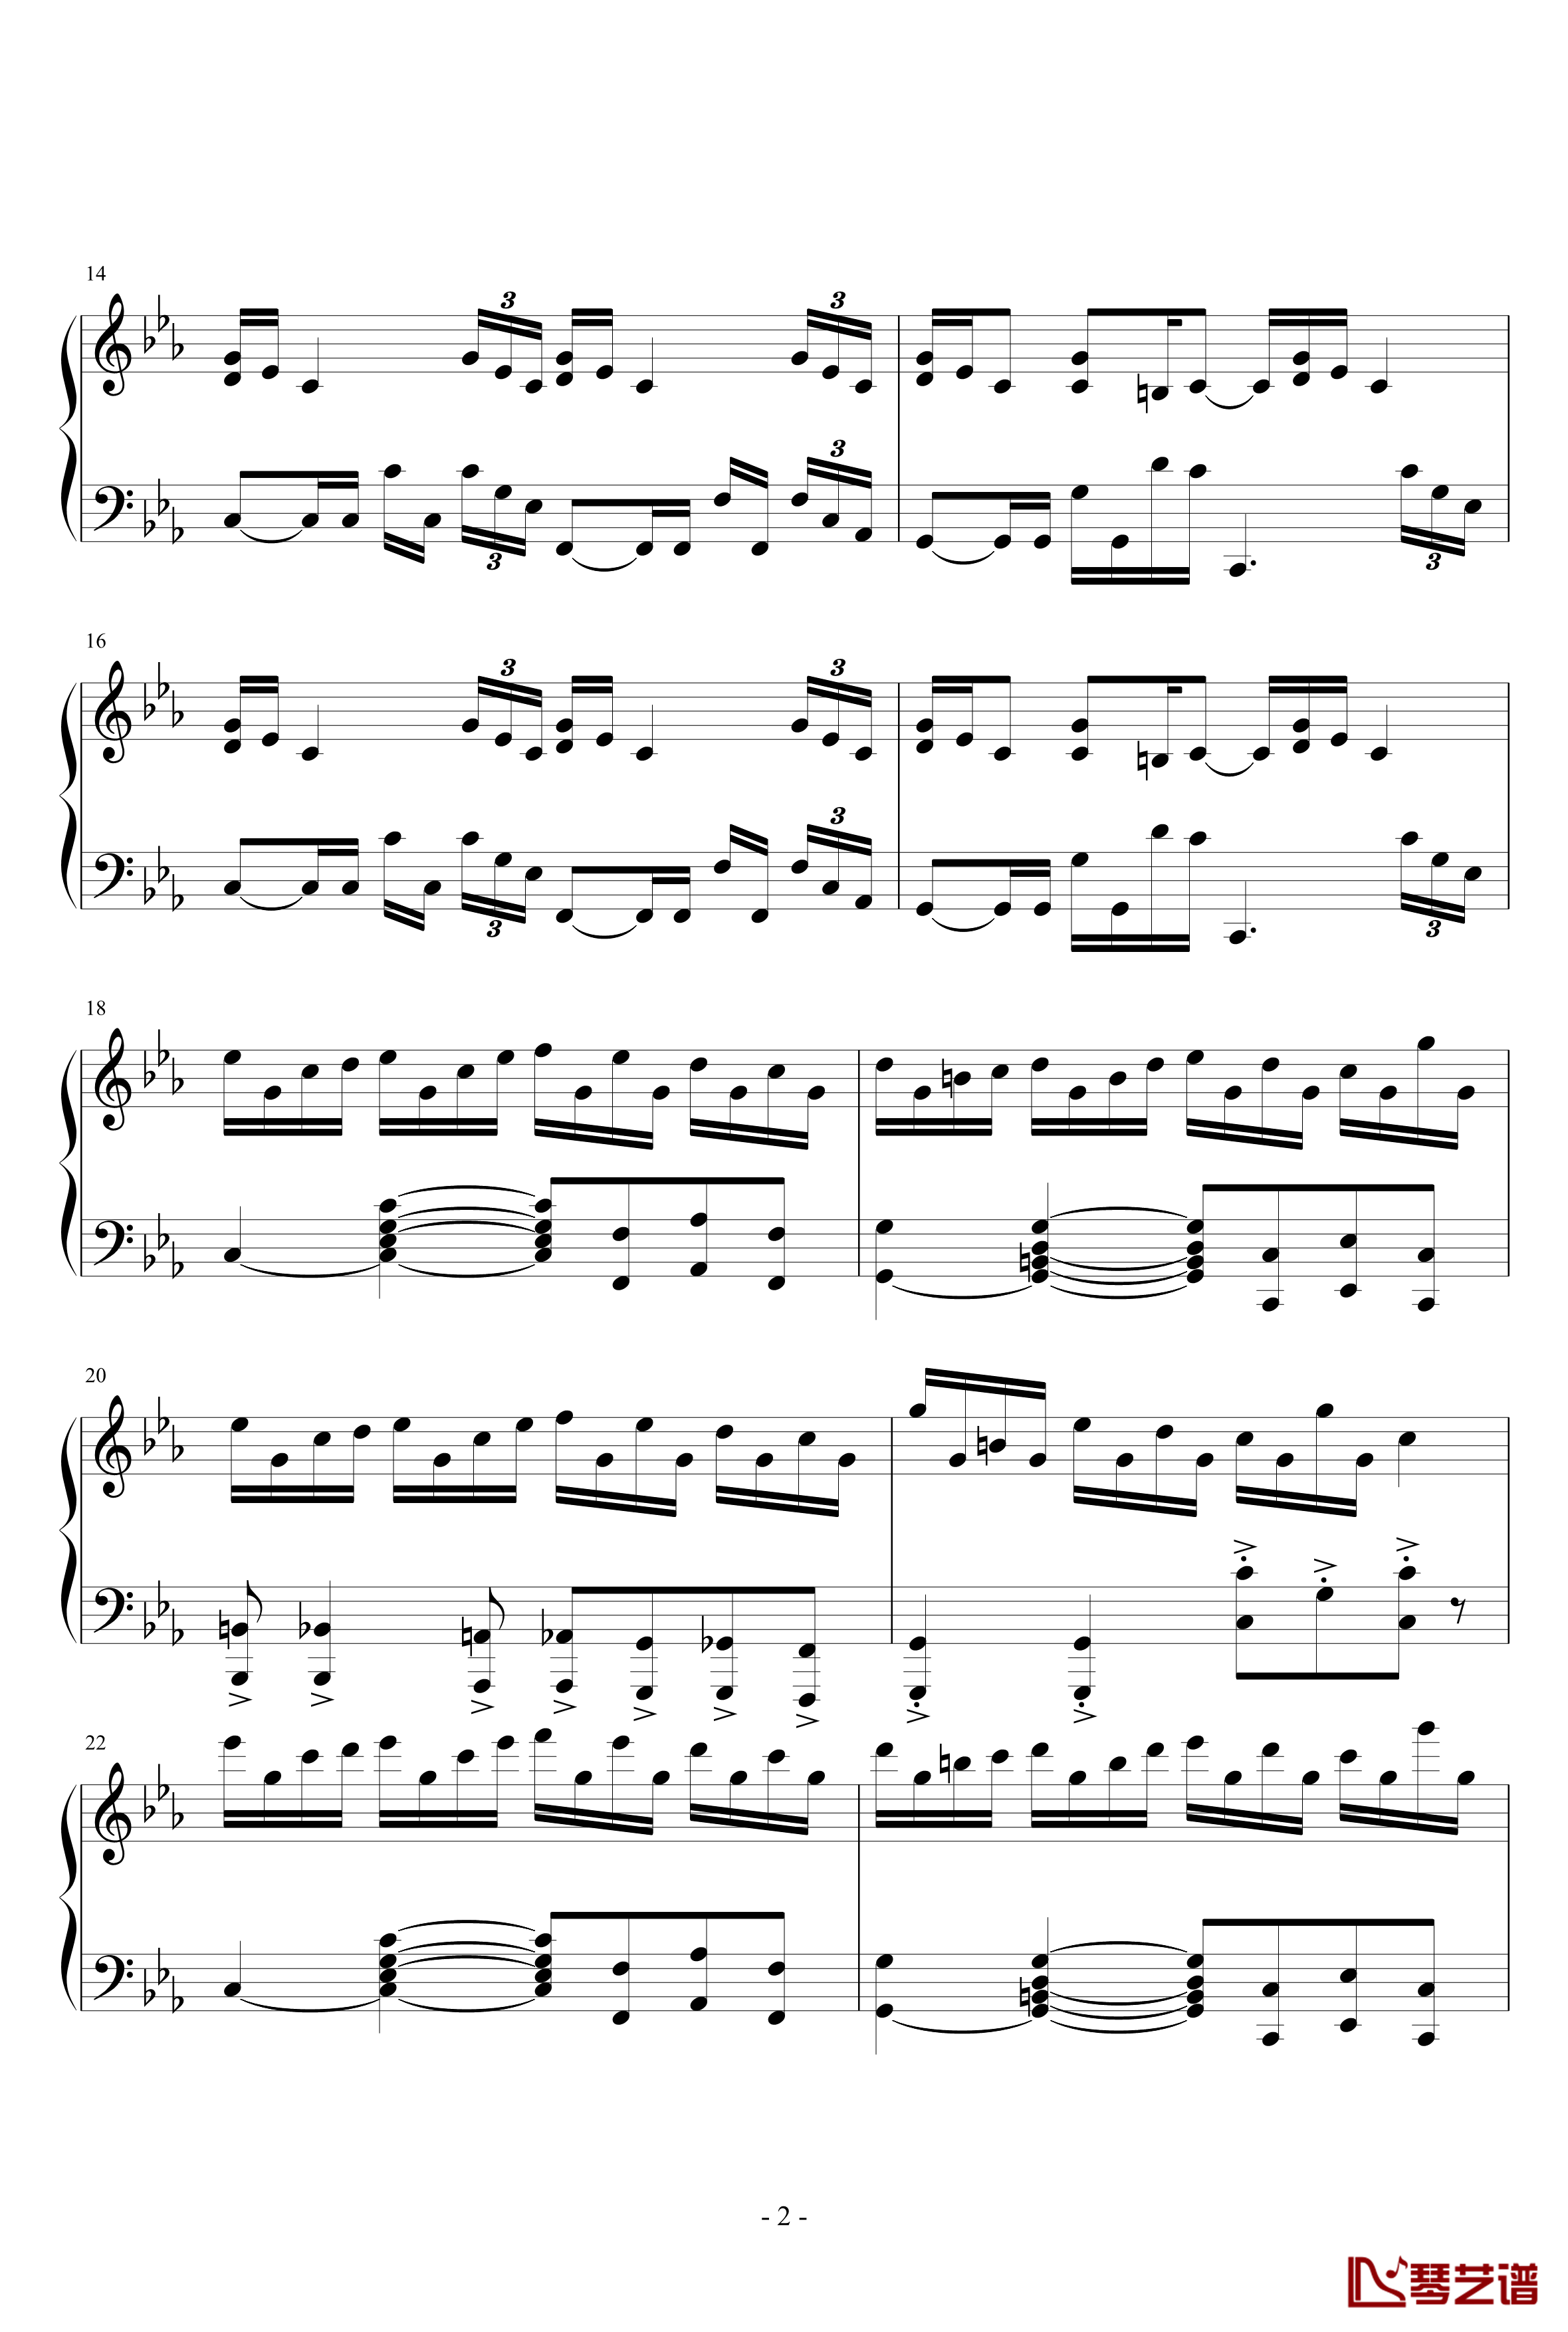 克罗地亚狂想曲钢琴谱-天津演奏会原版-马克西姆-Maksim·Mrvica2